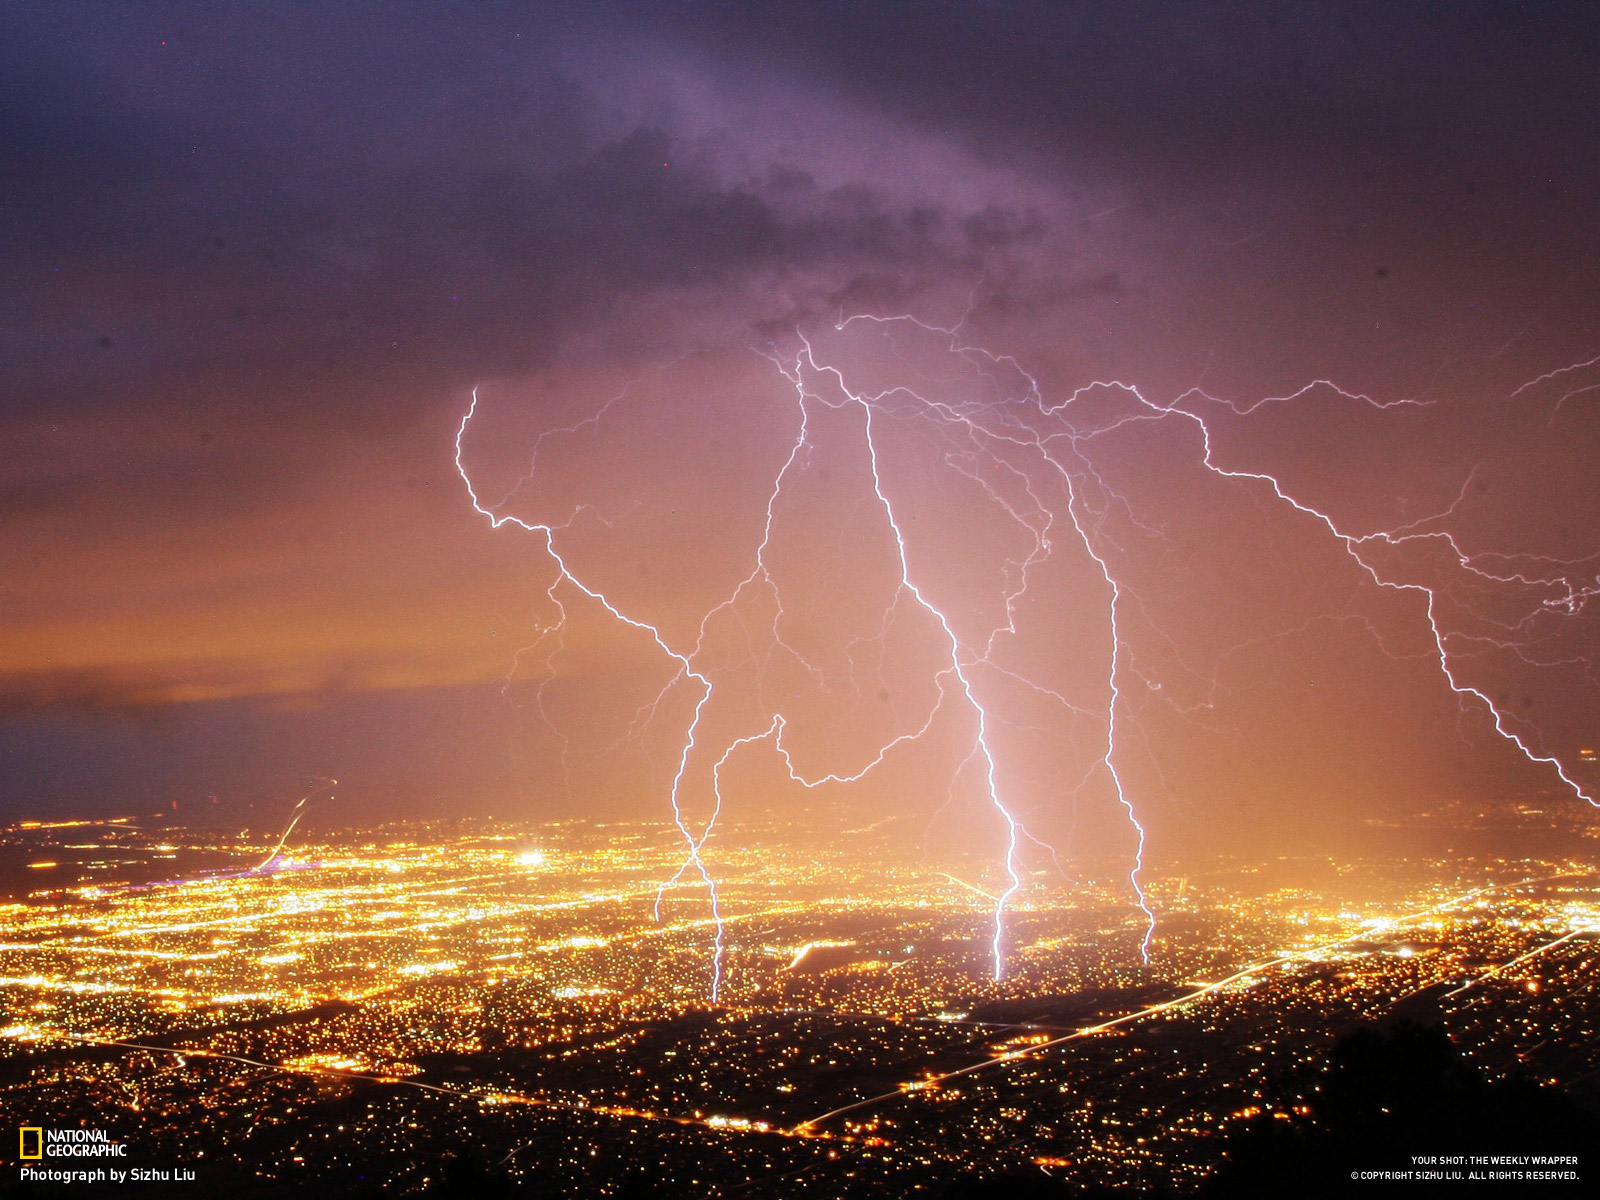 Lighting storm, Albuquerque, New Mexico